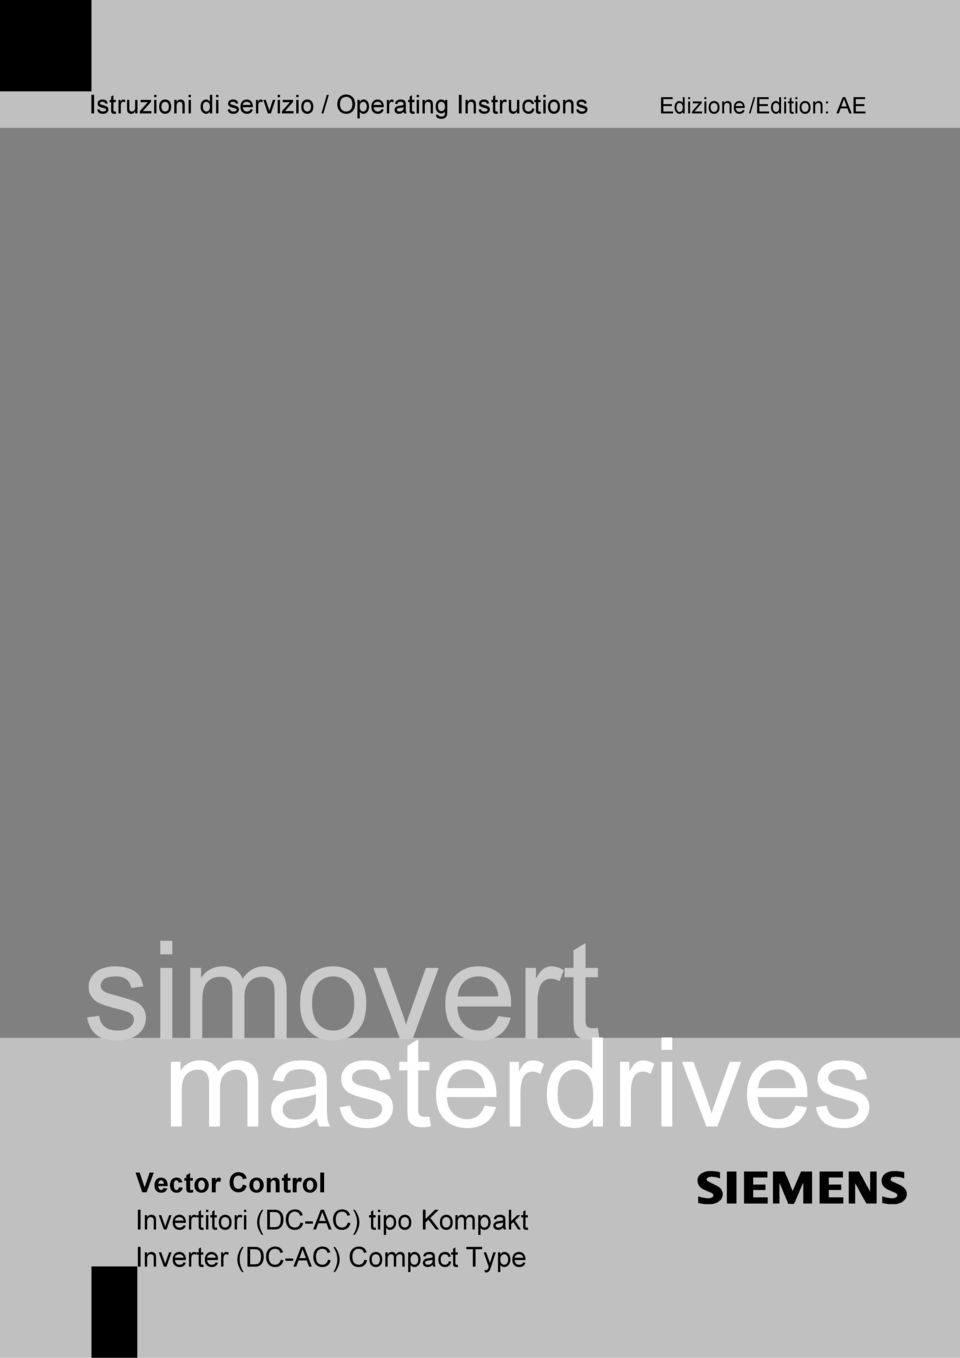 simovert masterdrives Vector Control